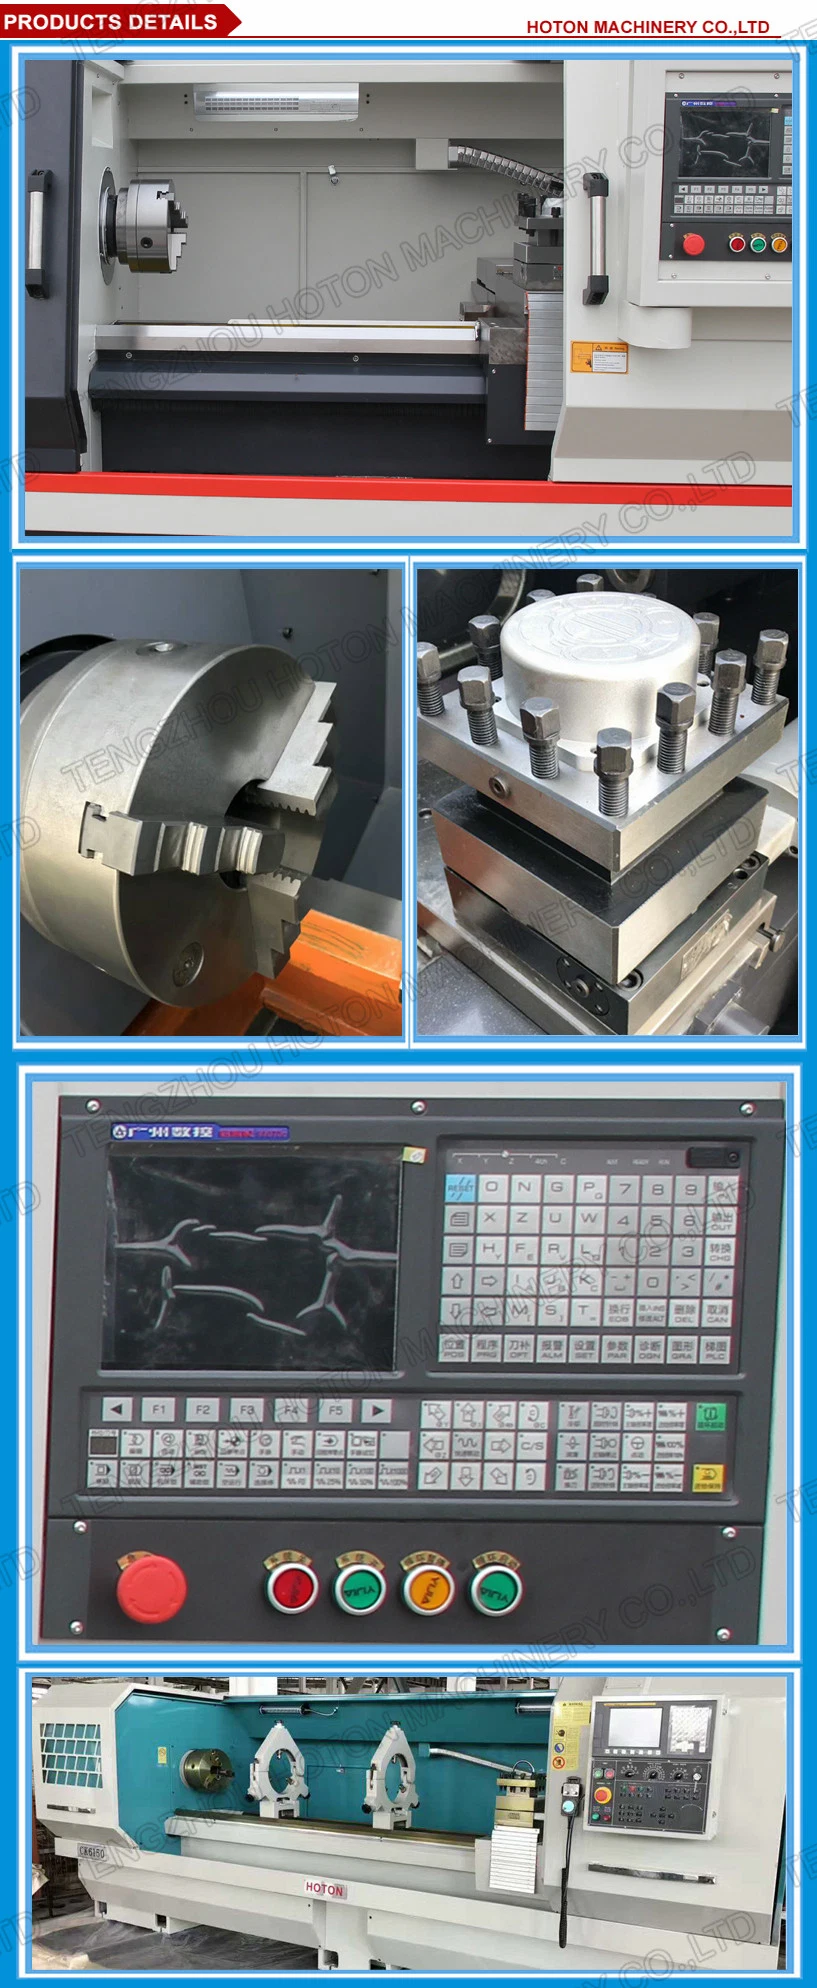 CK6180 CK61100 Torno Cnc Para Metal Cnc Lathe Turning Machine